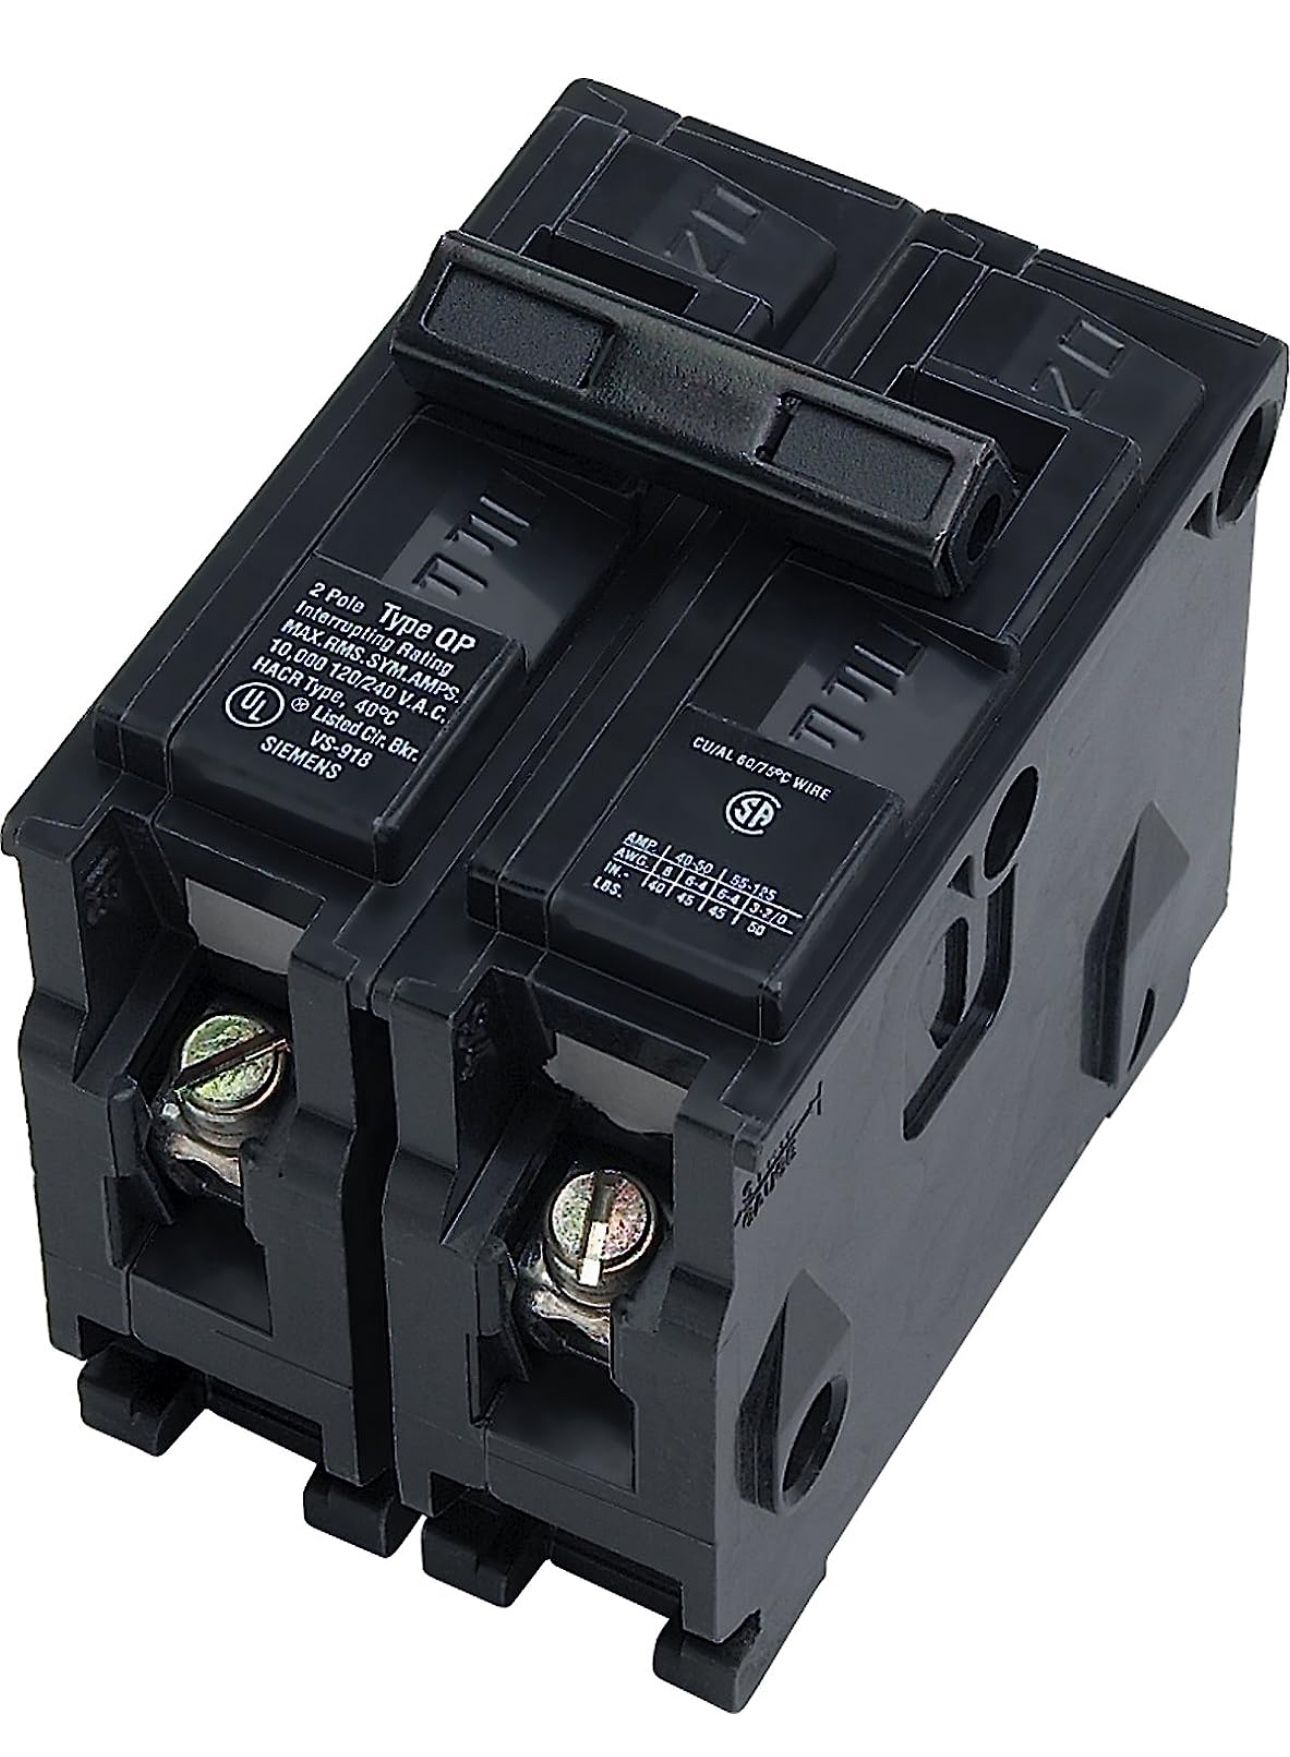 Siemens -HI Q235 35-Amp Double Pole Type QP Circuit Breaker, black